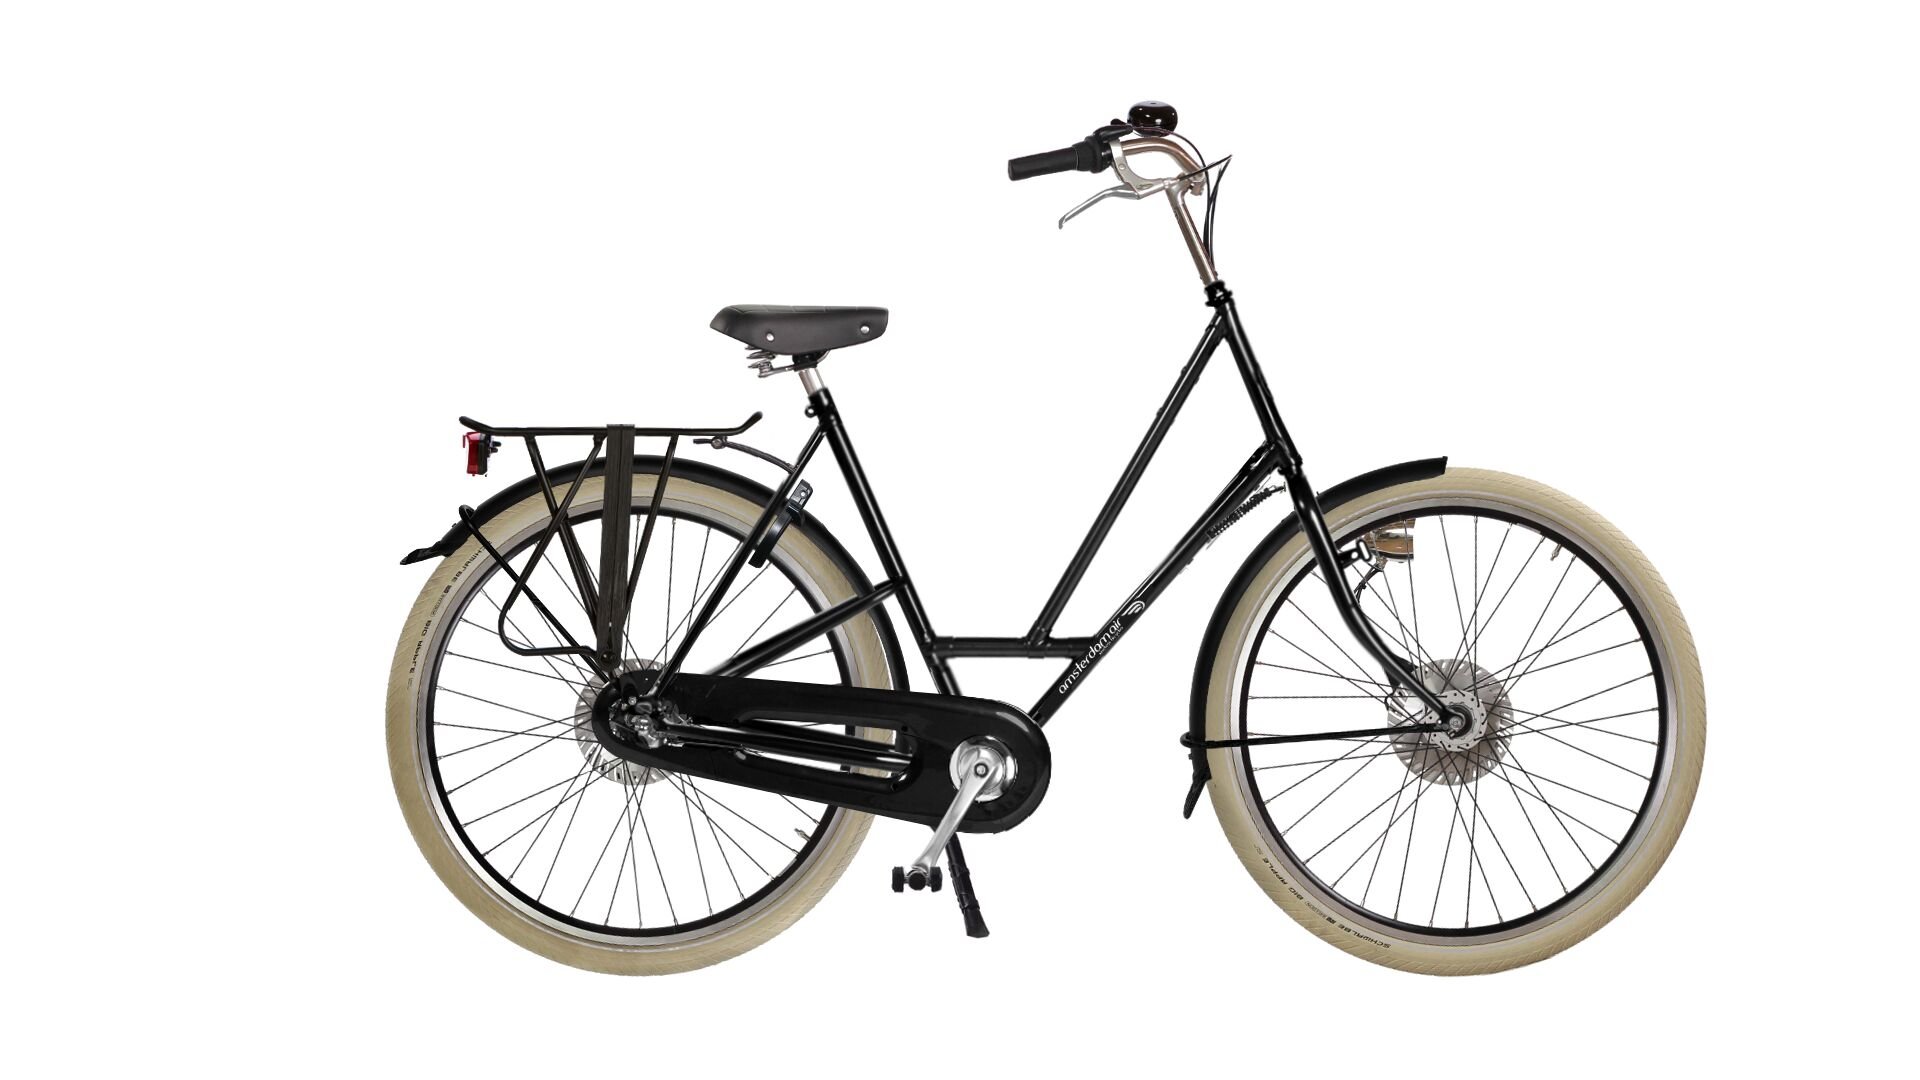 Configurateur du vélo hollandais City Zen